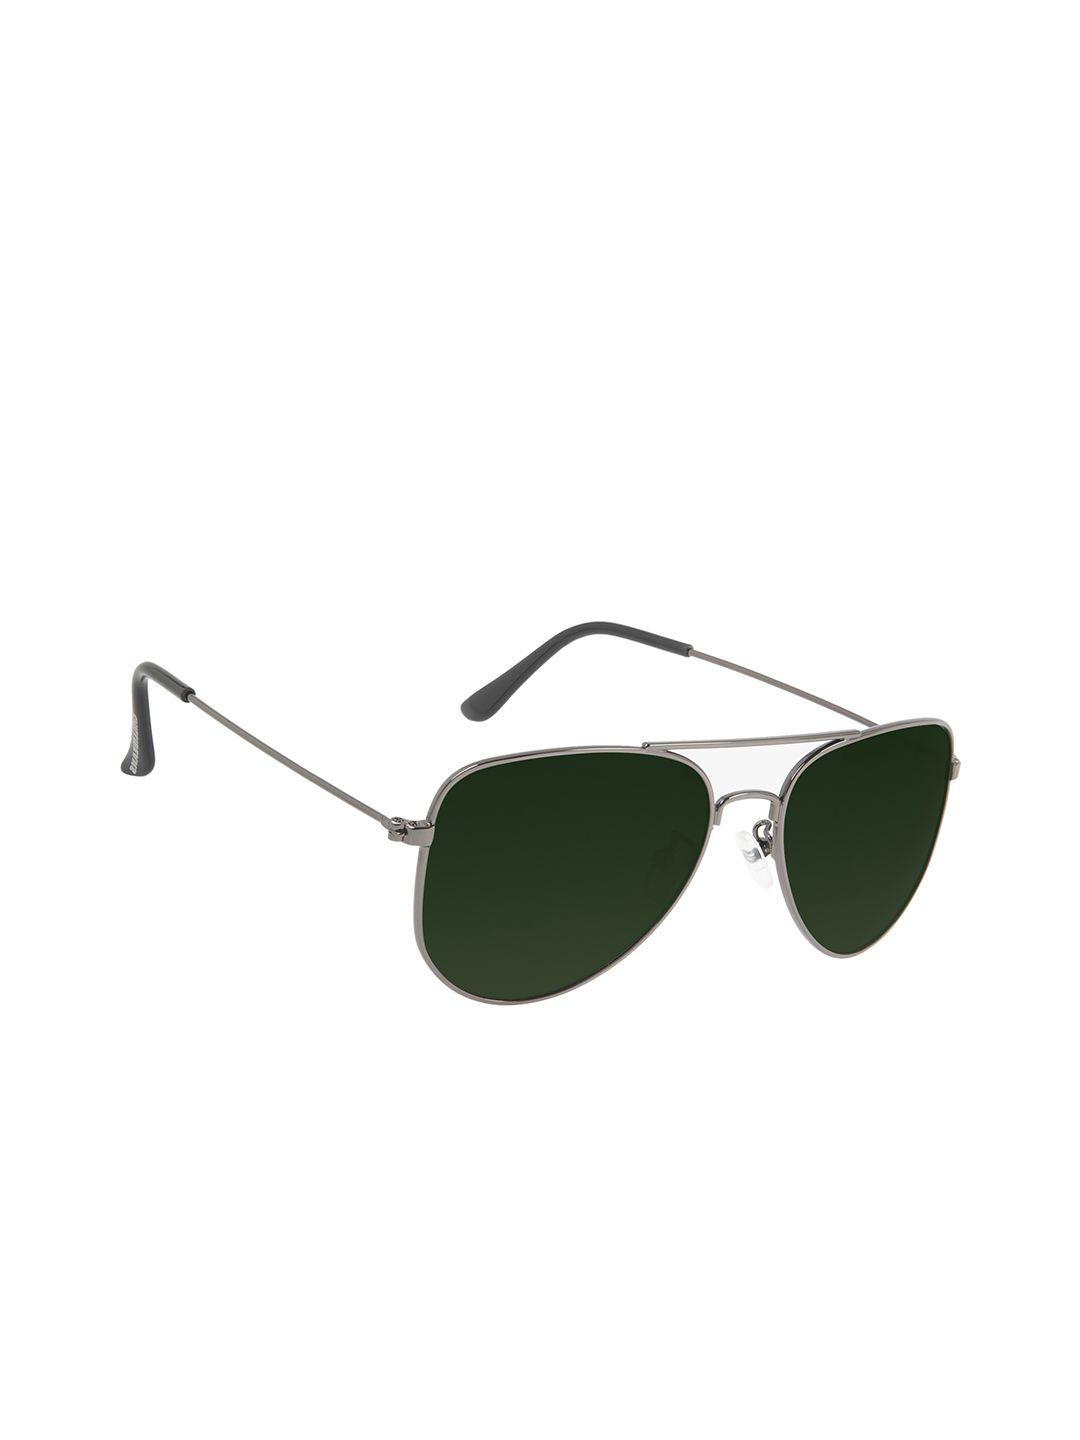 chilli beans unisex green lens & black sunglasses with uv protected lens ocmt32041524